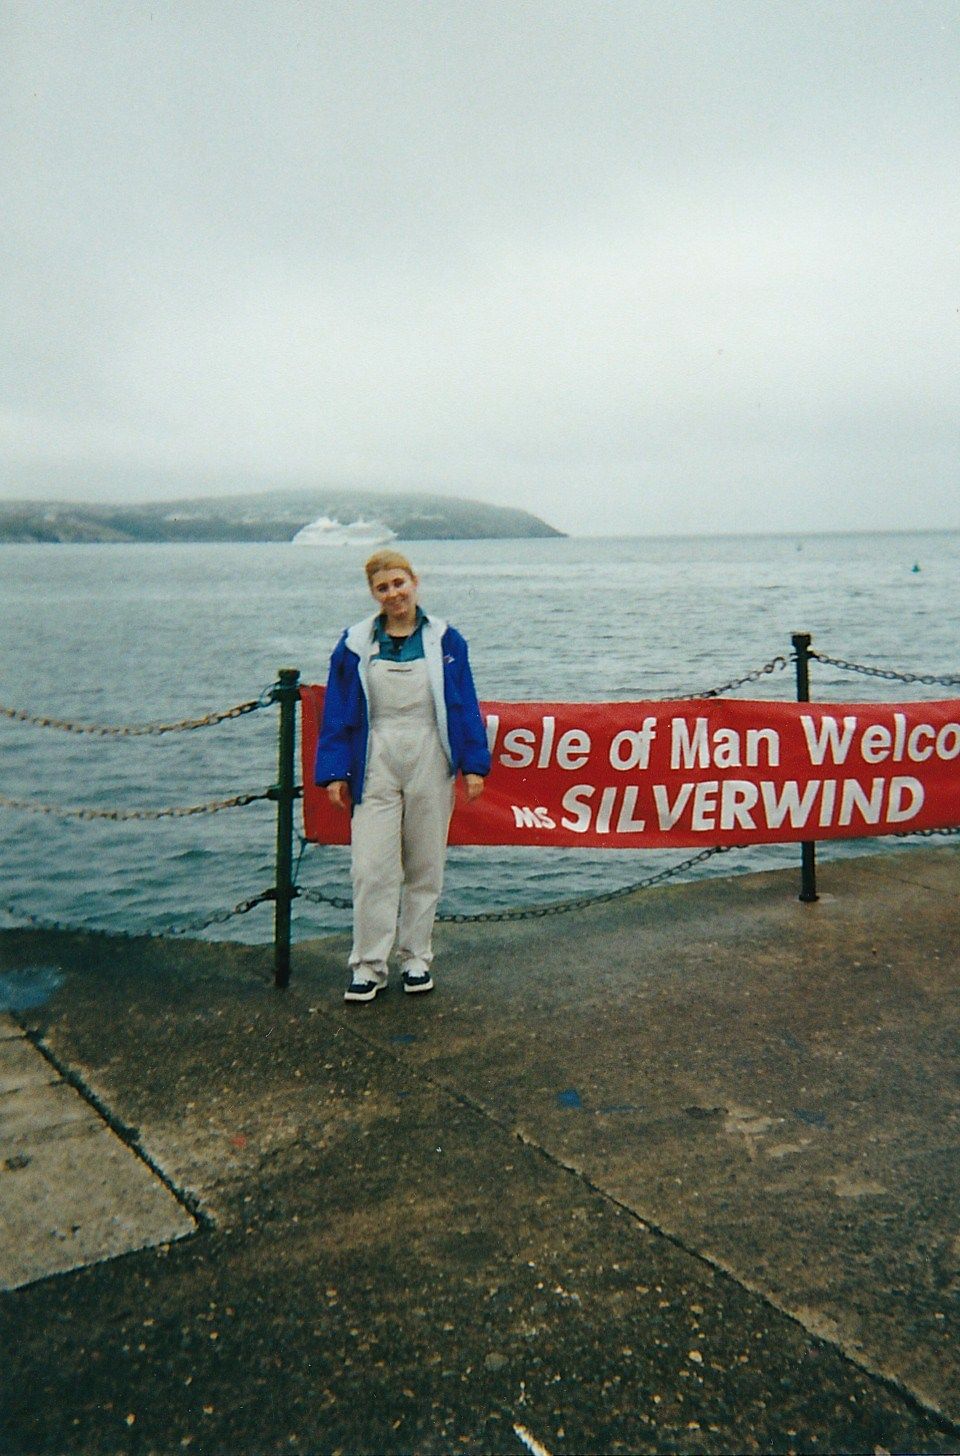 Isle of Man - UK